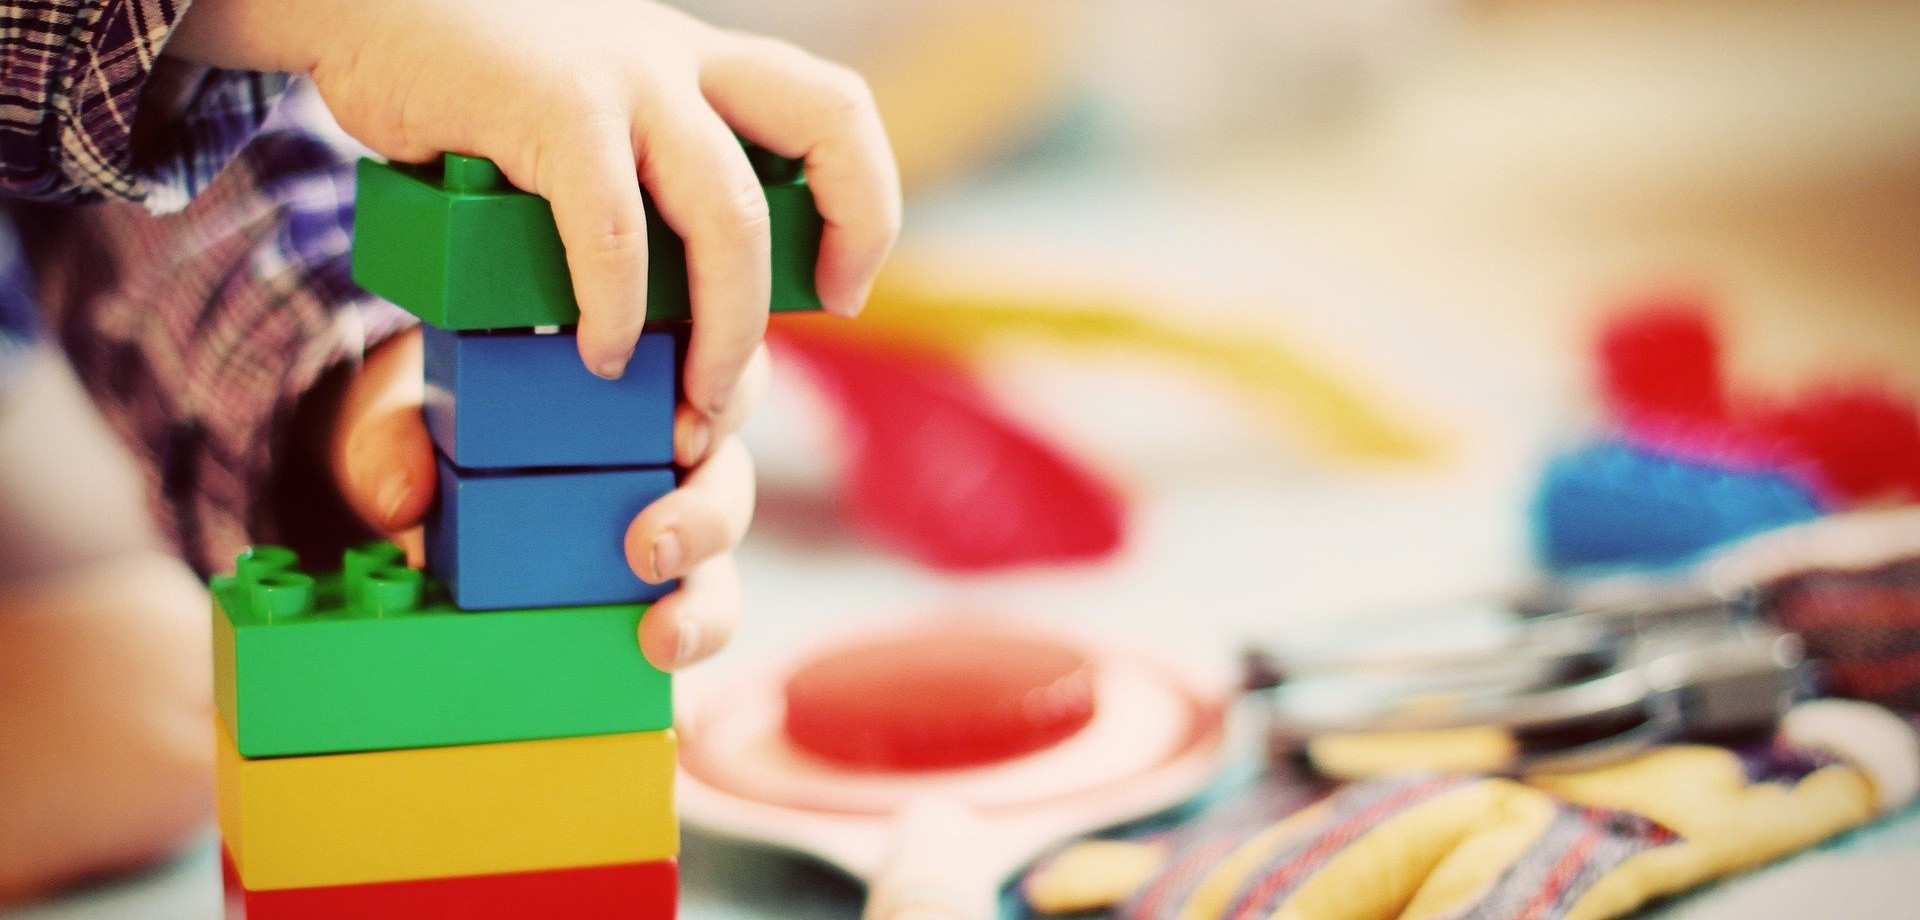 Das Bild zeigt die Hände eines Kindes, das mit bunten Legosteinen spielt und diese stapelt.